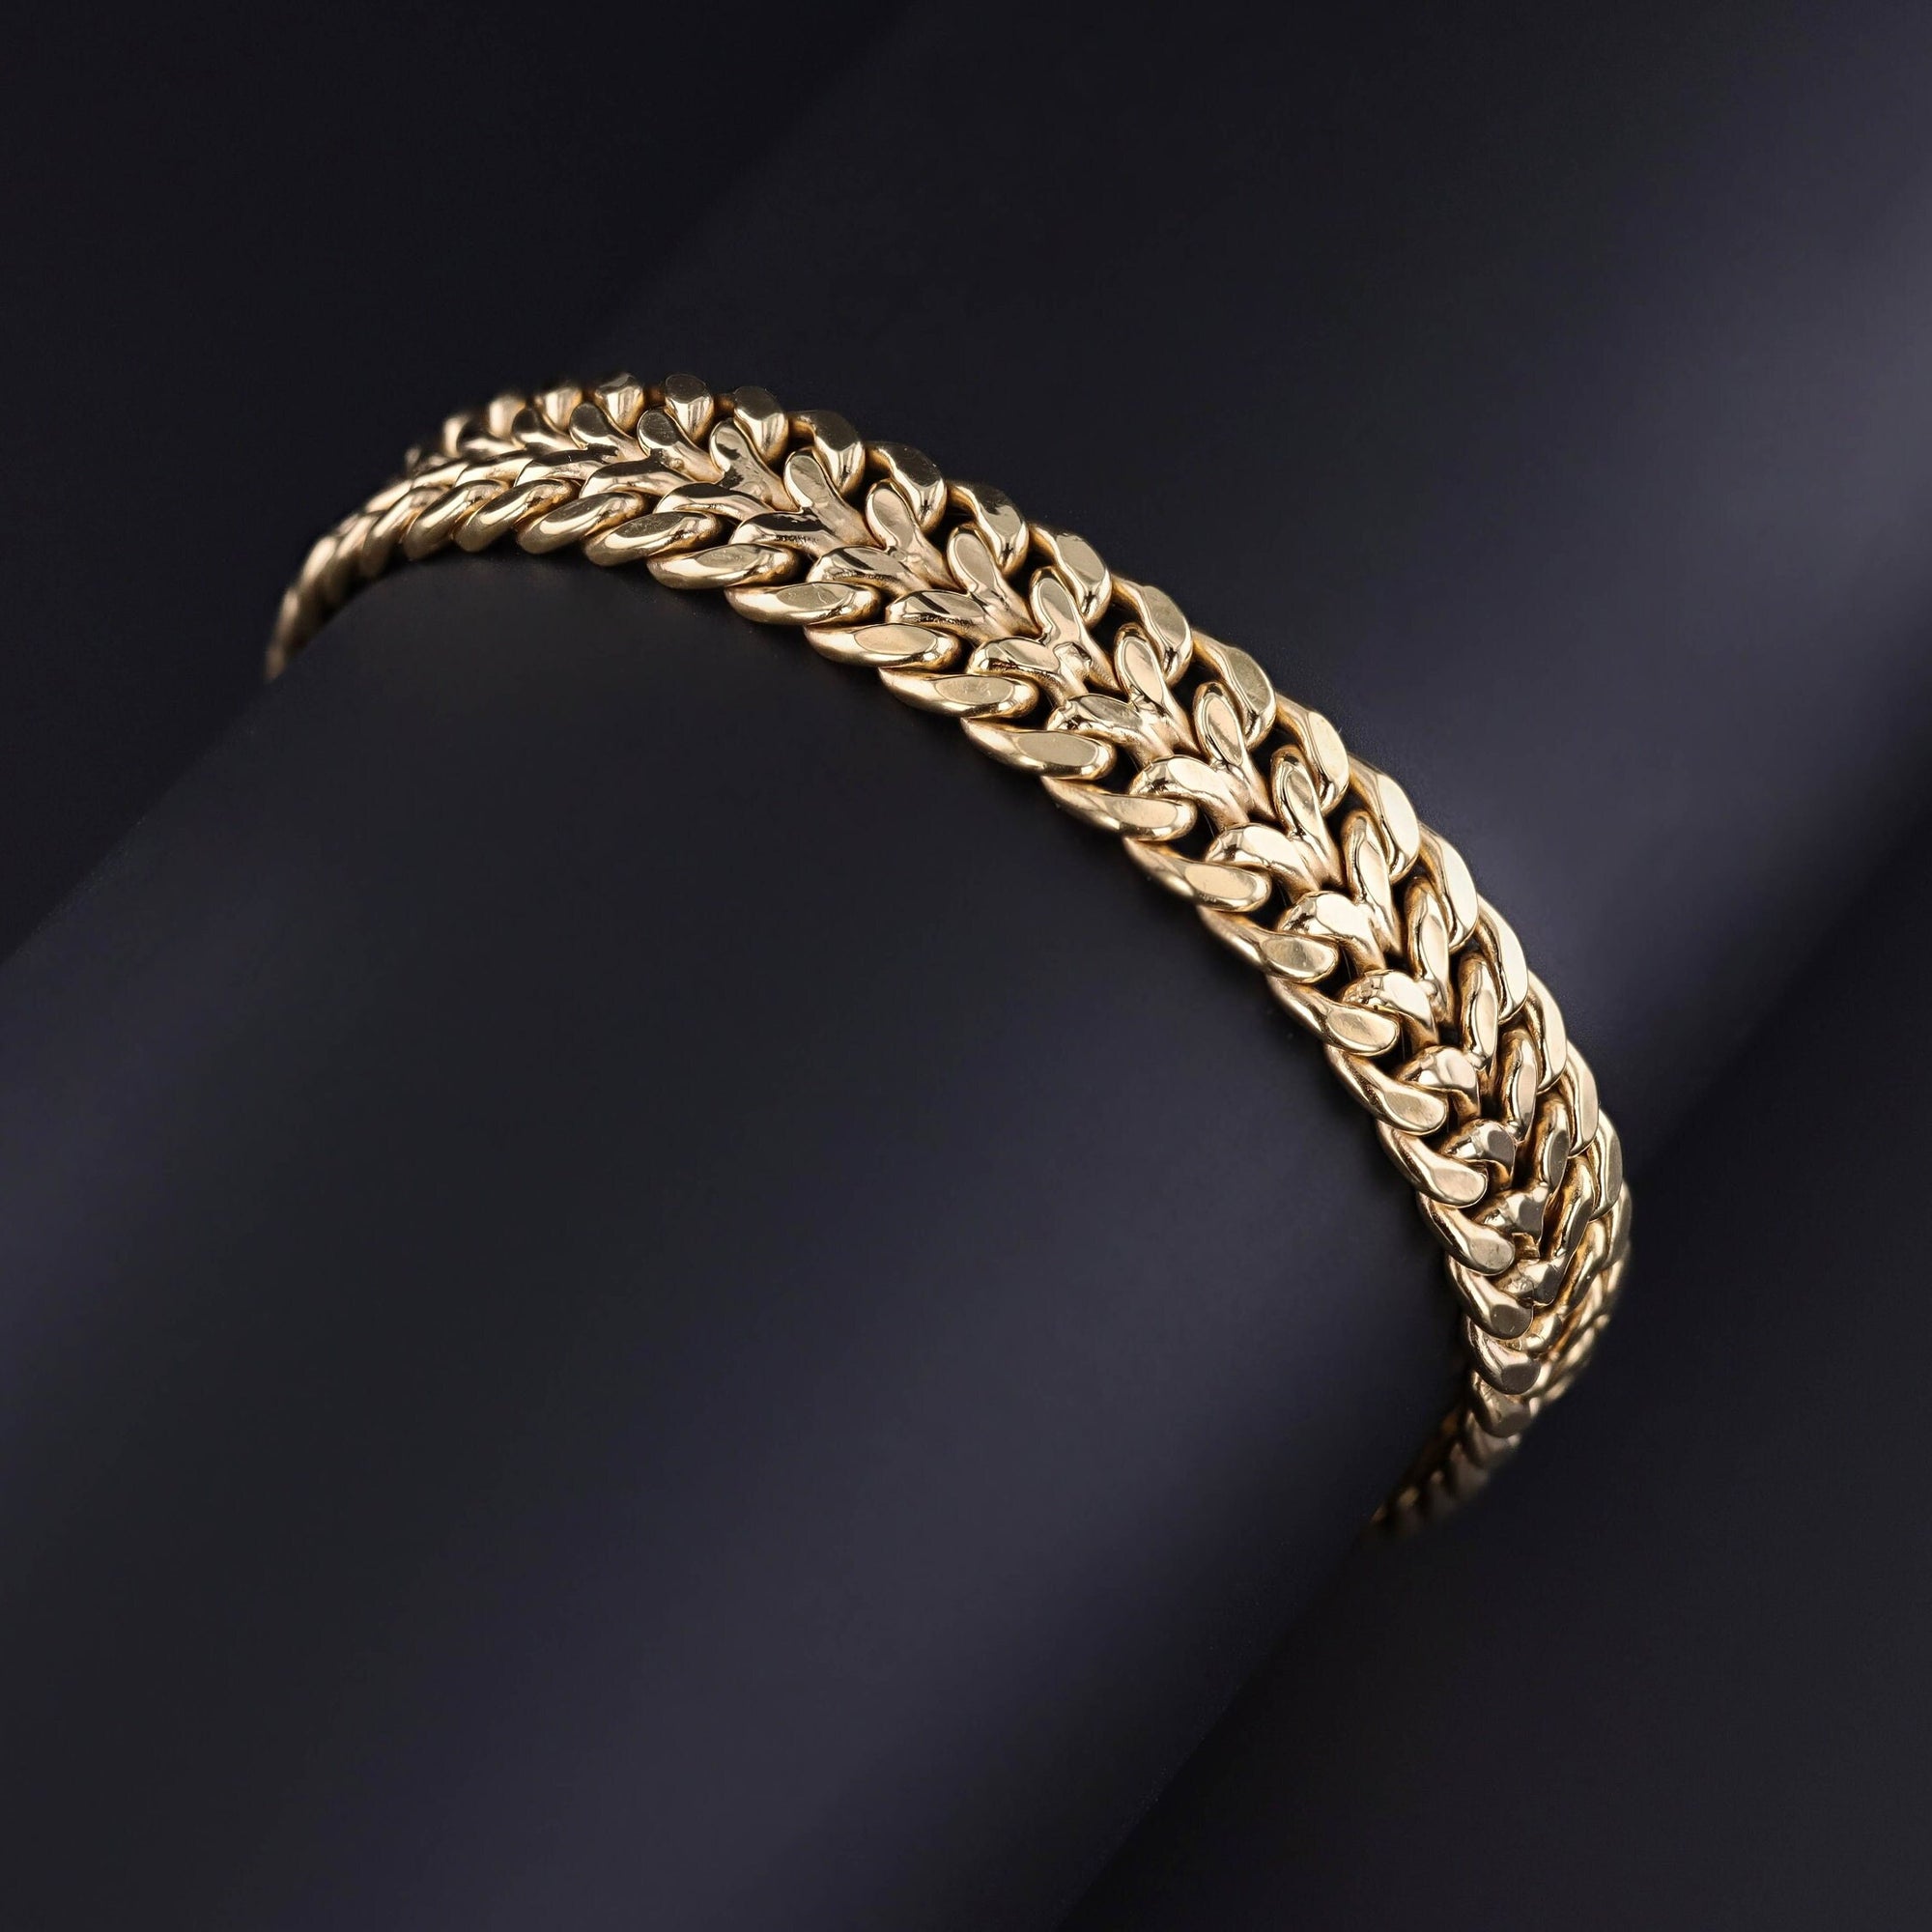 Vintage Woven Bracelet of 14k Gold